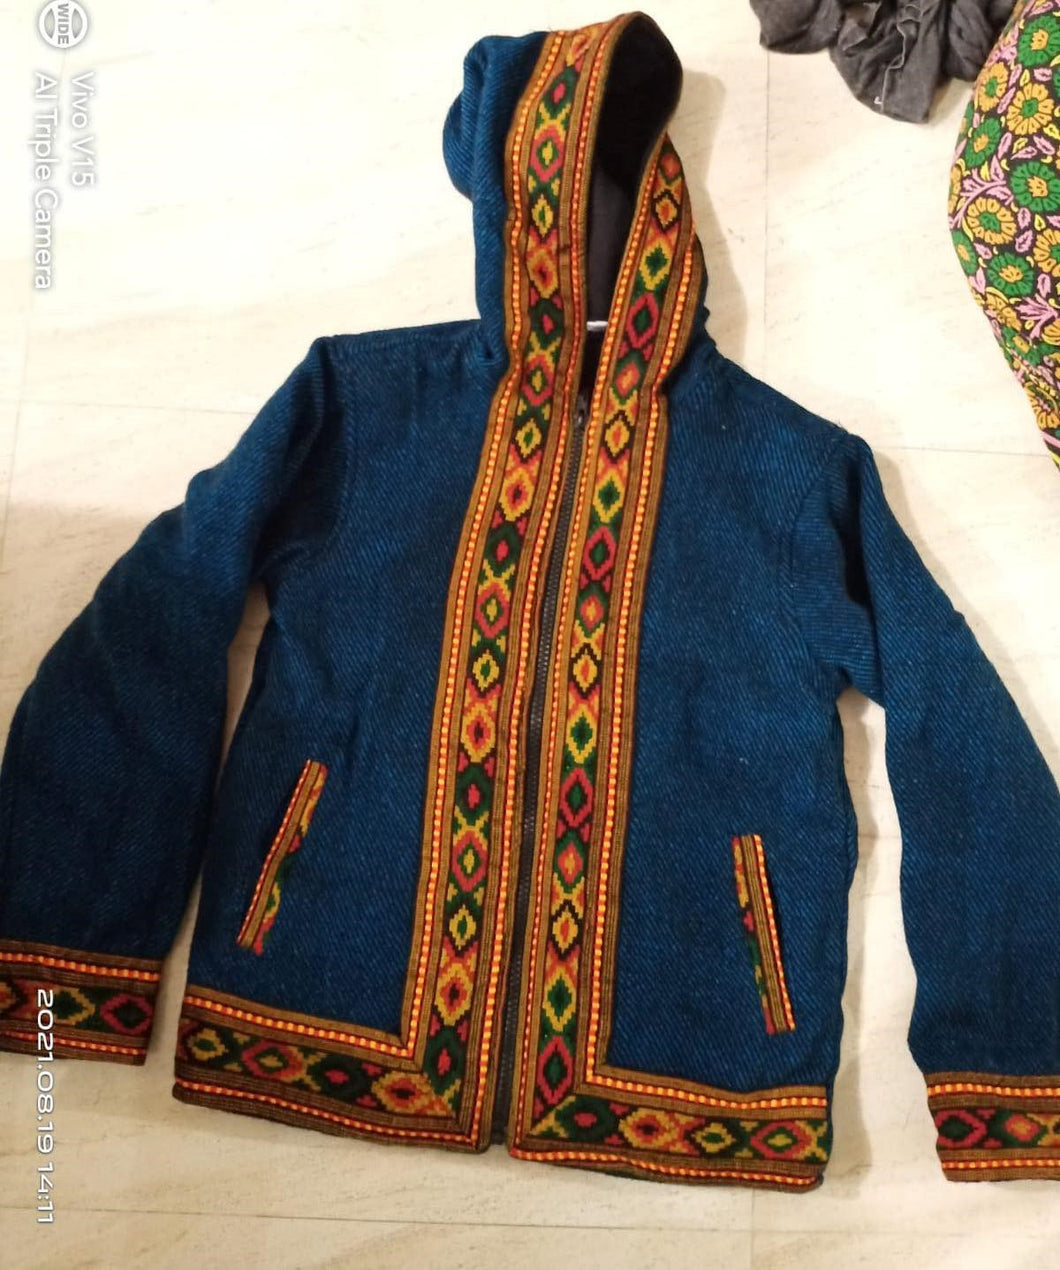 Embroidered Fleece Jacket with Hood